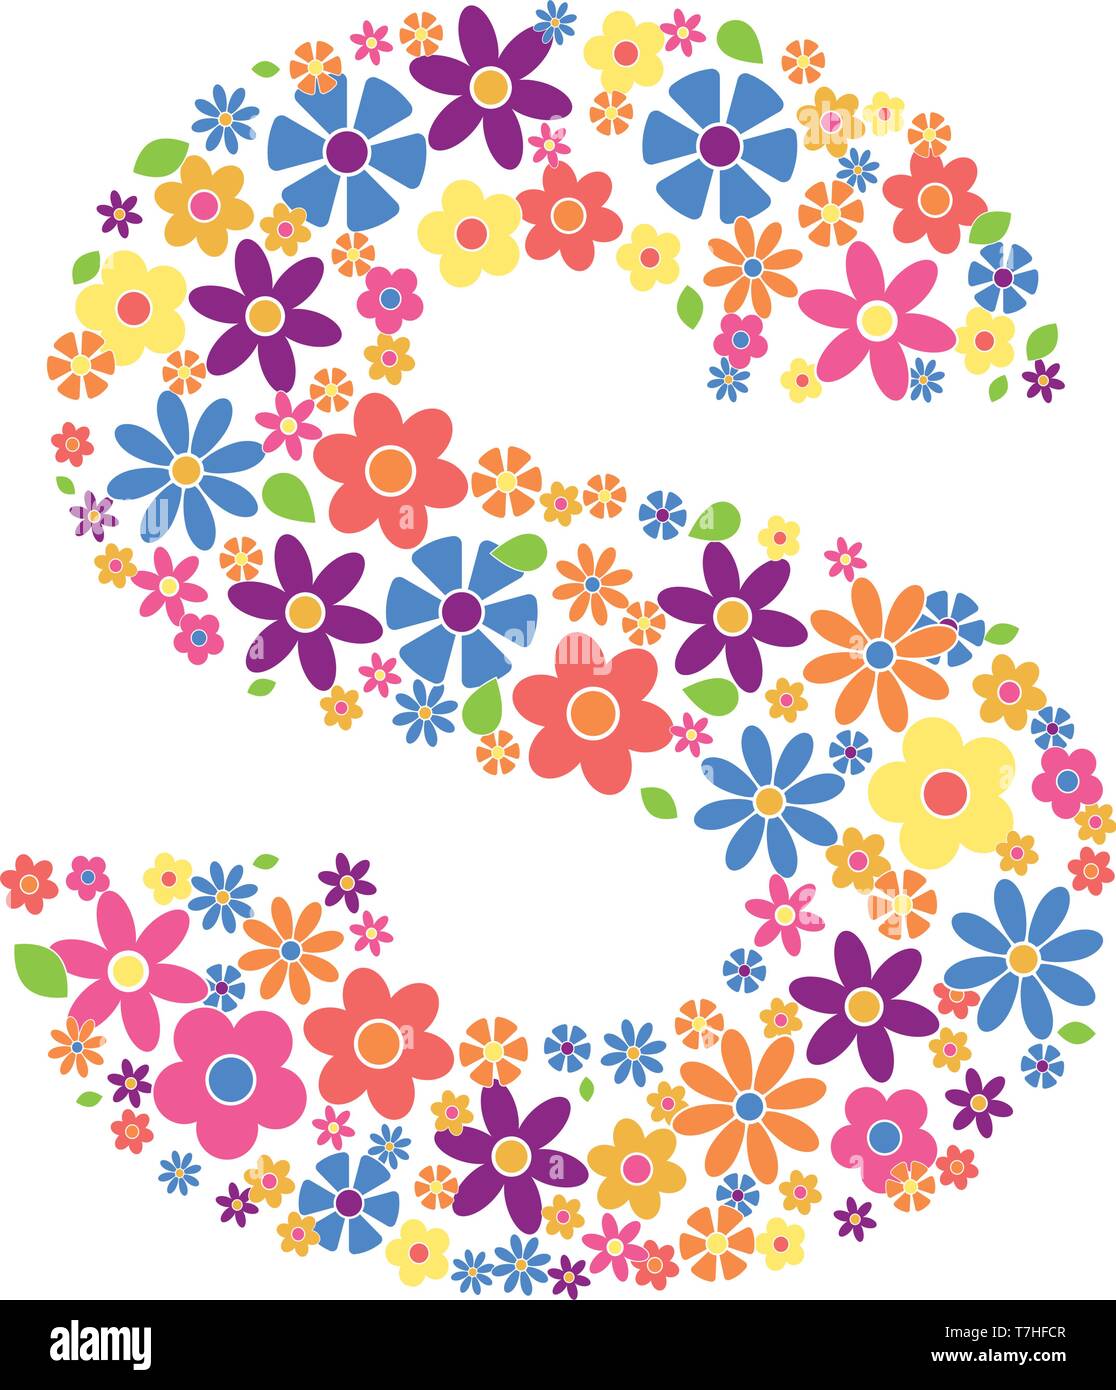 Buchstabe S gefüllt mit einer Vielzahl von bunten Blumen auf weißem Hintergrund Vektor-illustration isoliert Stock Vektor